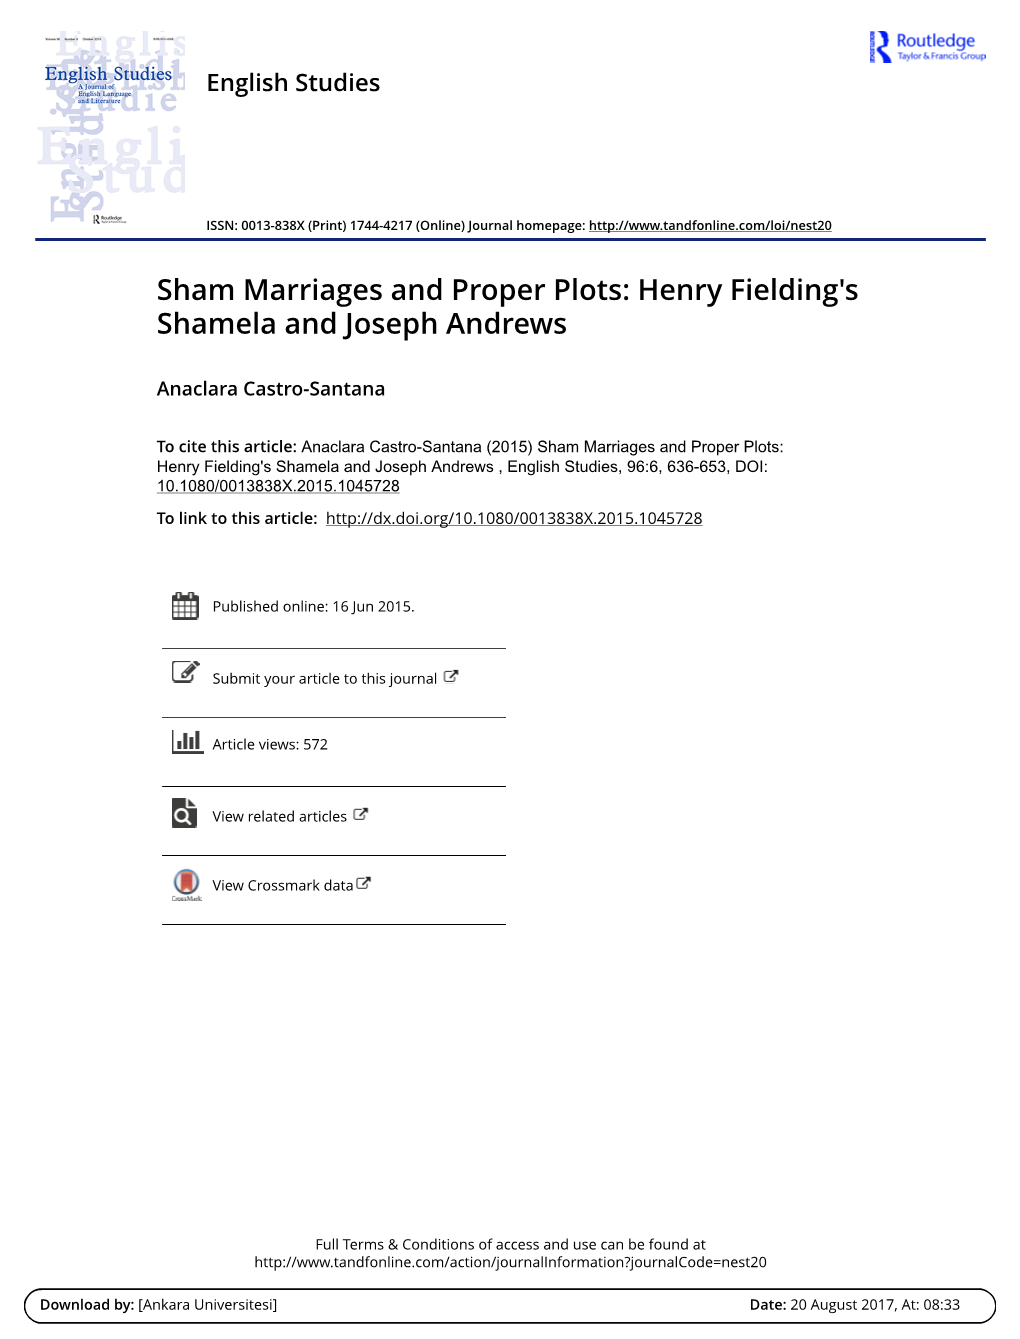 Henry Fielding's Shamela and Joseph Andrews